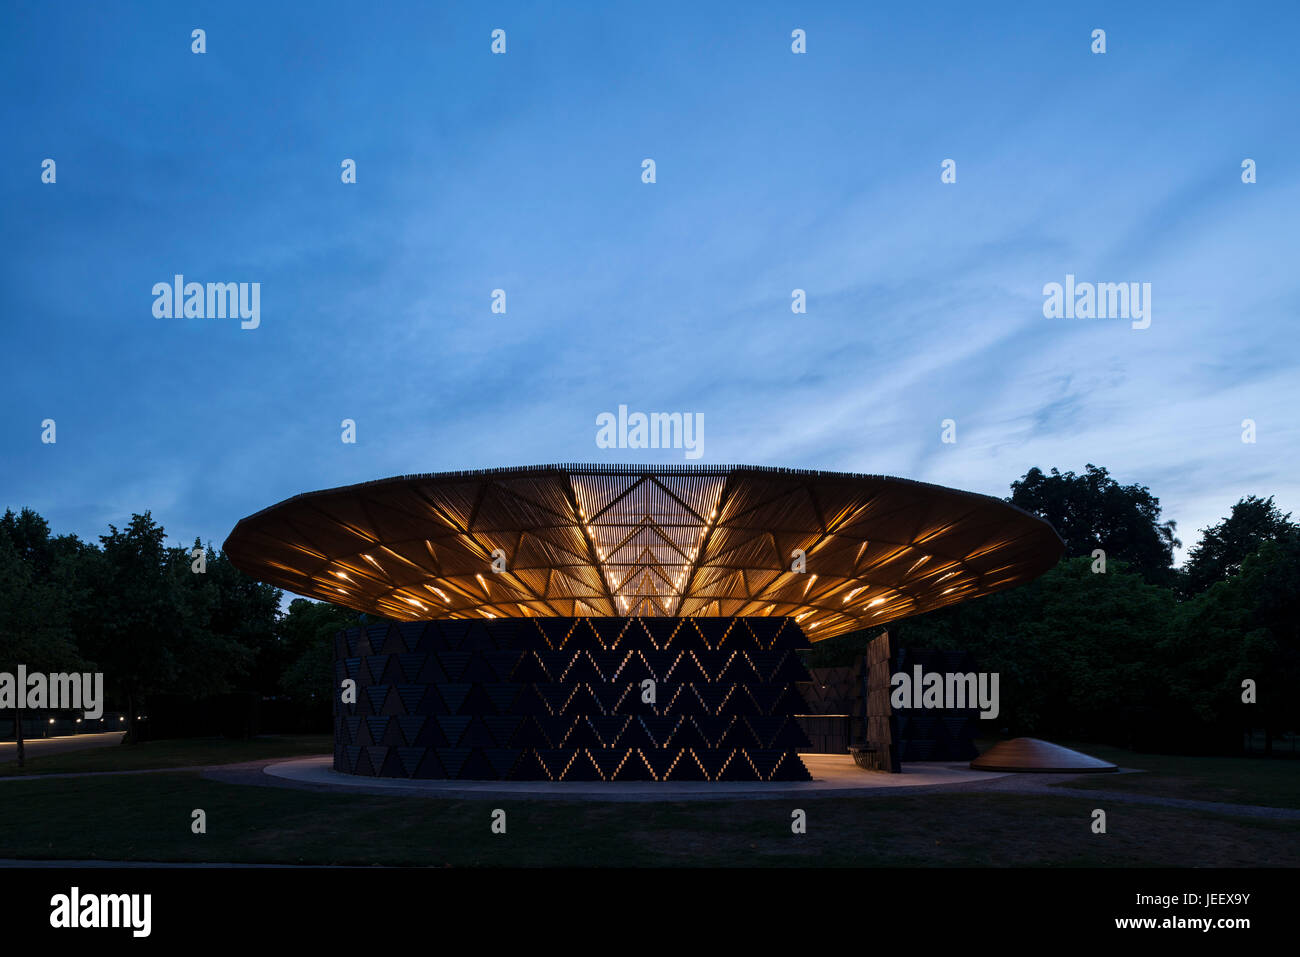 Nachtansicht der Zeit. Serpentin Sommer Pavillon 2017, London, Vereinigtes Königreich. Architekt: Diebedo Francis Kéré, 2017. Stockfoto